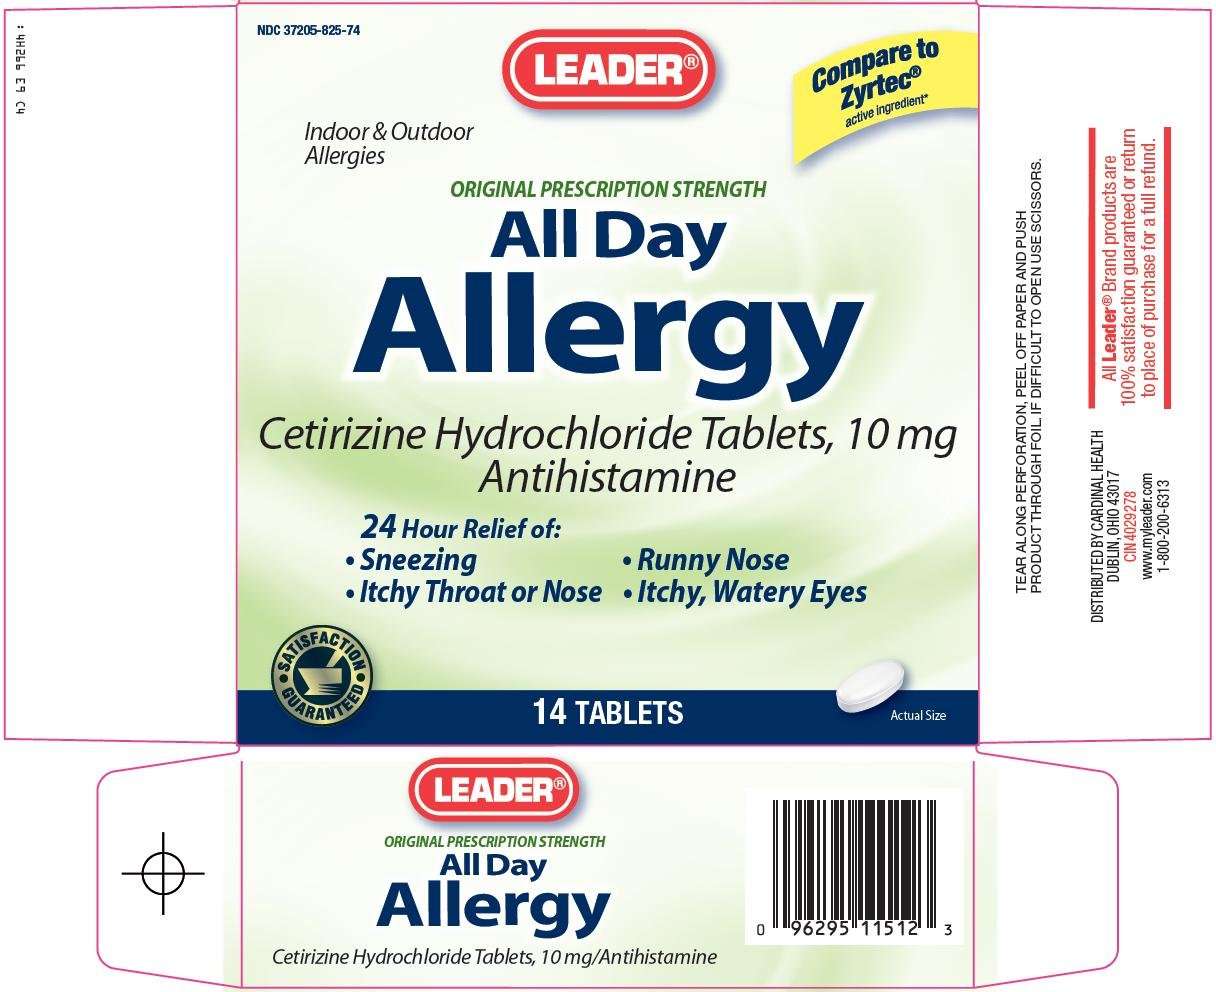 Leader All Day Allergy